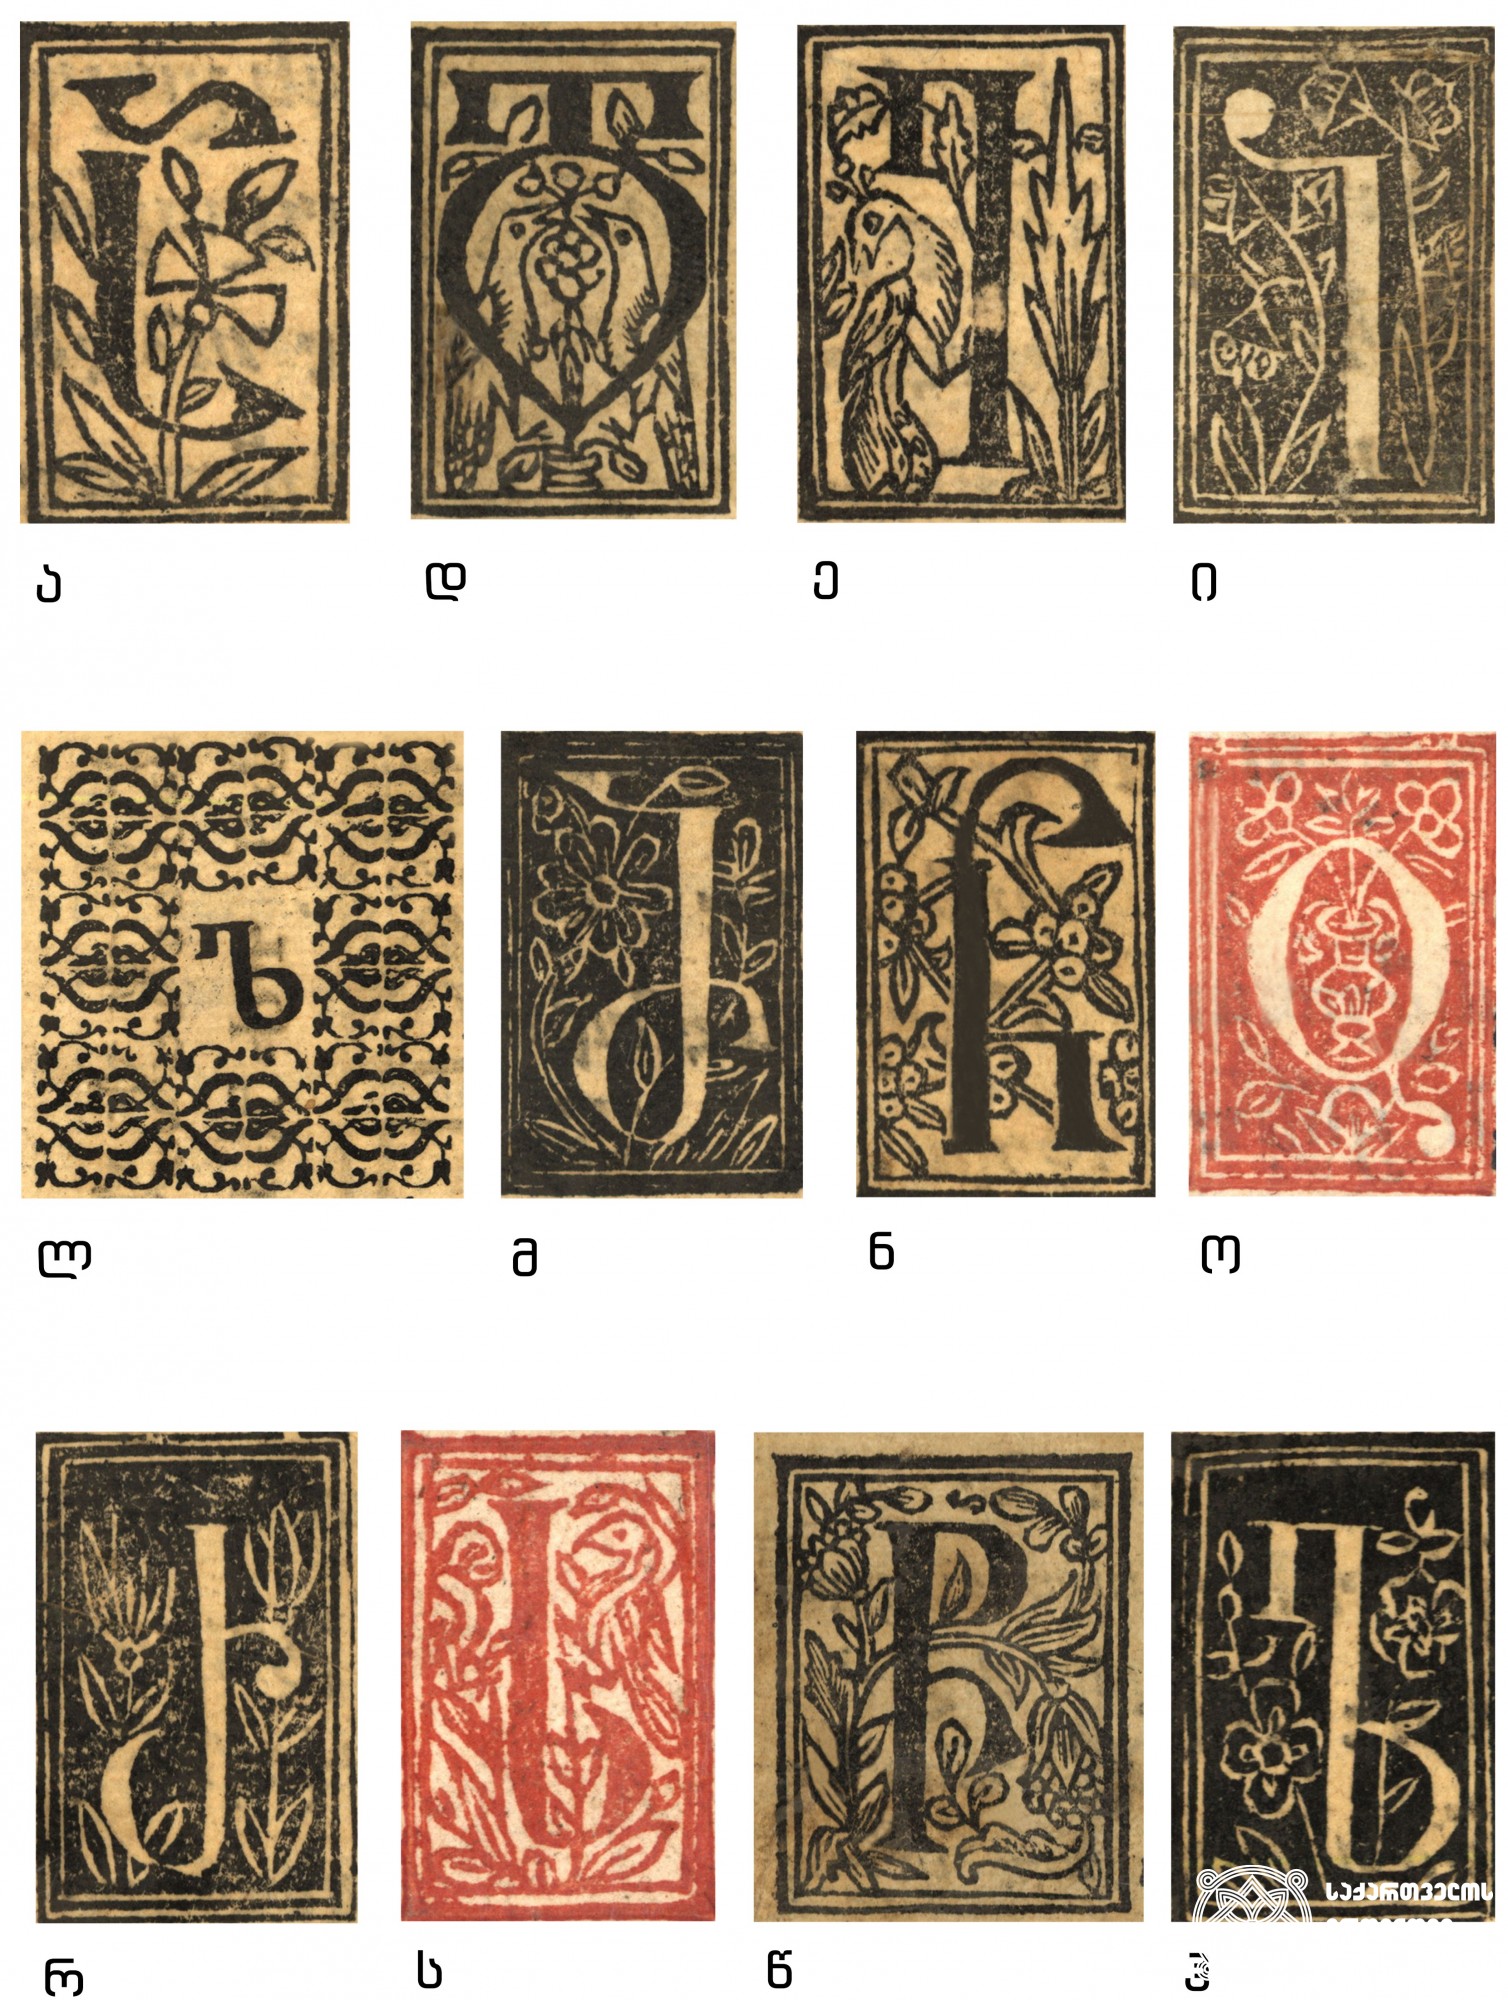 ვახტანგ VI-ის სტამბაში გამოცემულ წიგნებში გამოყენებული საზედაო გრაფემები<br>
ტფილისი, 1709-1717<br>
Capital Graphemes used in the Books printed in the Printing House of Vakhtang VI <br>
Tfilisi, 1709-1717